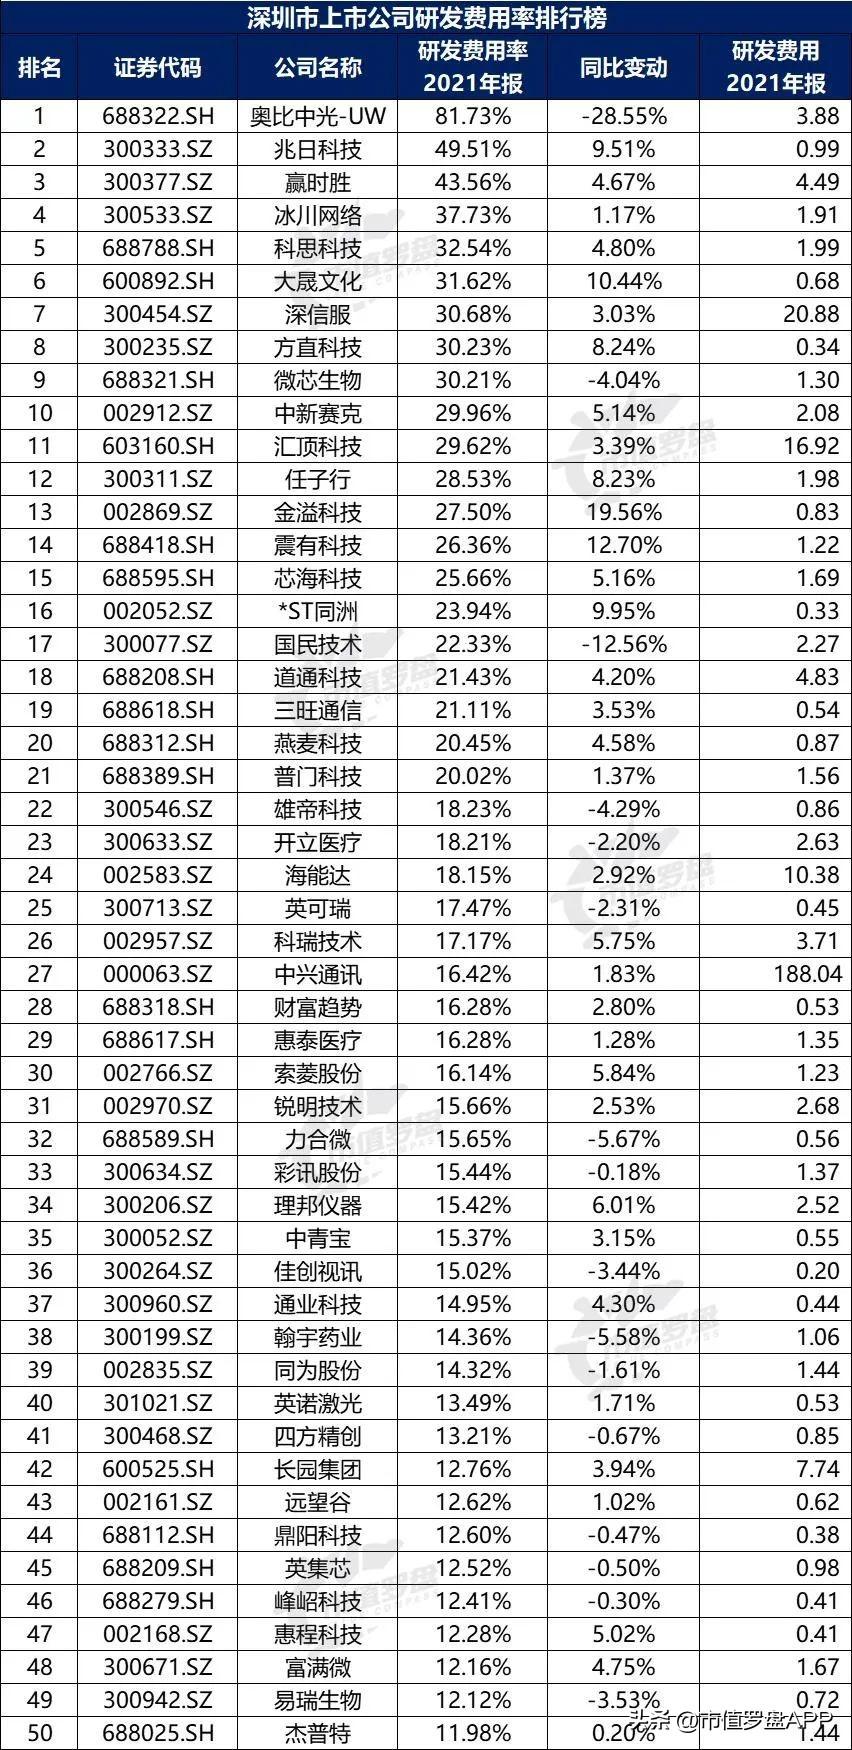 深圳财税公司服务排名,本月阐释